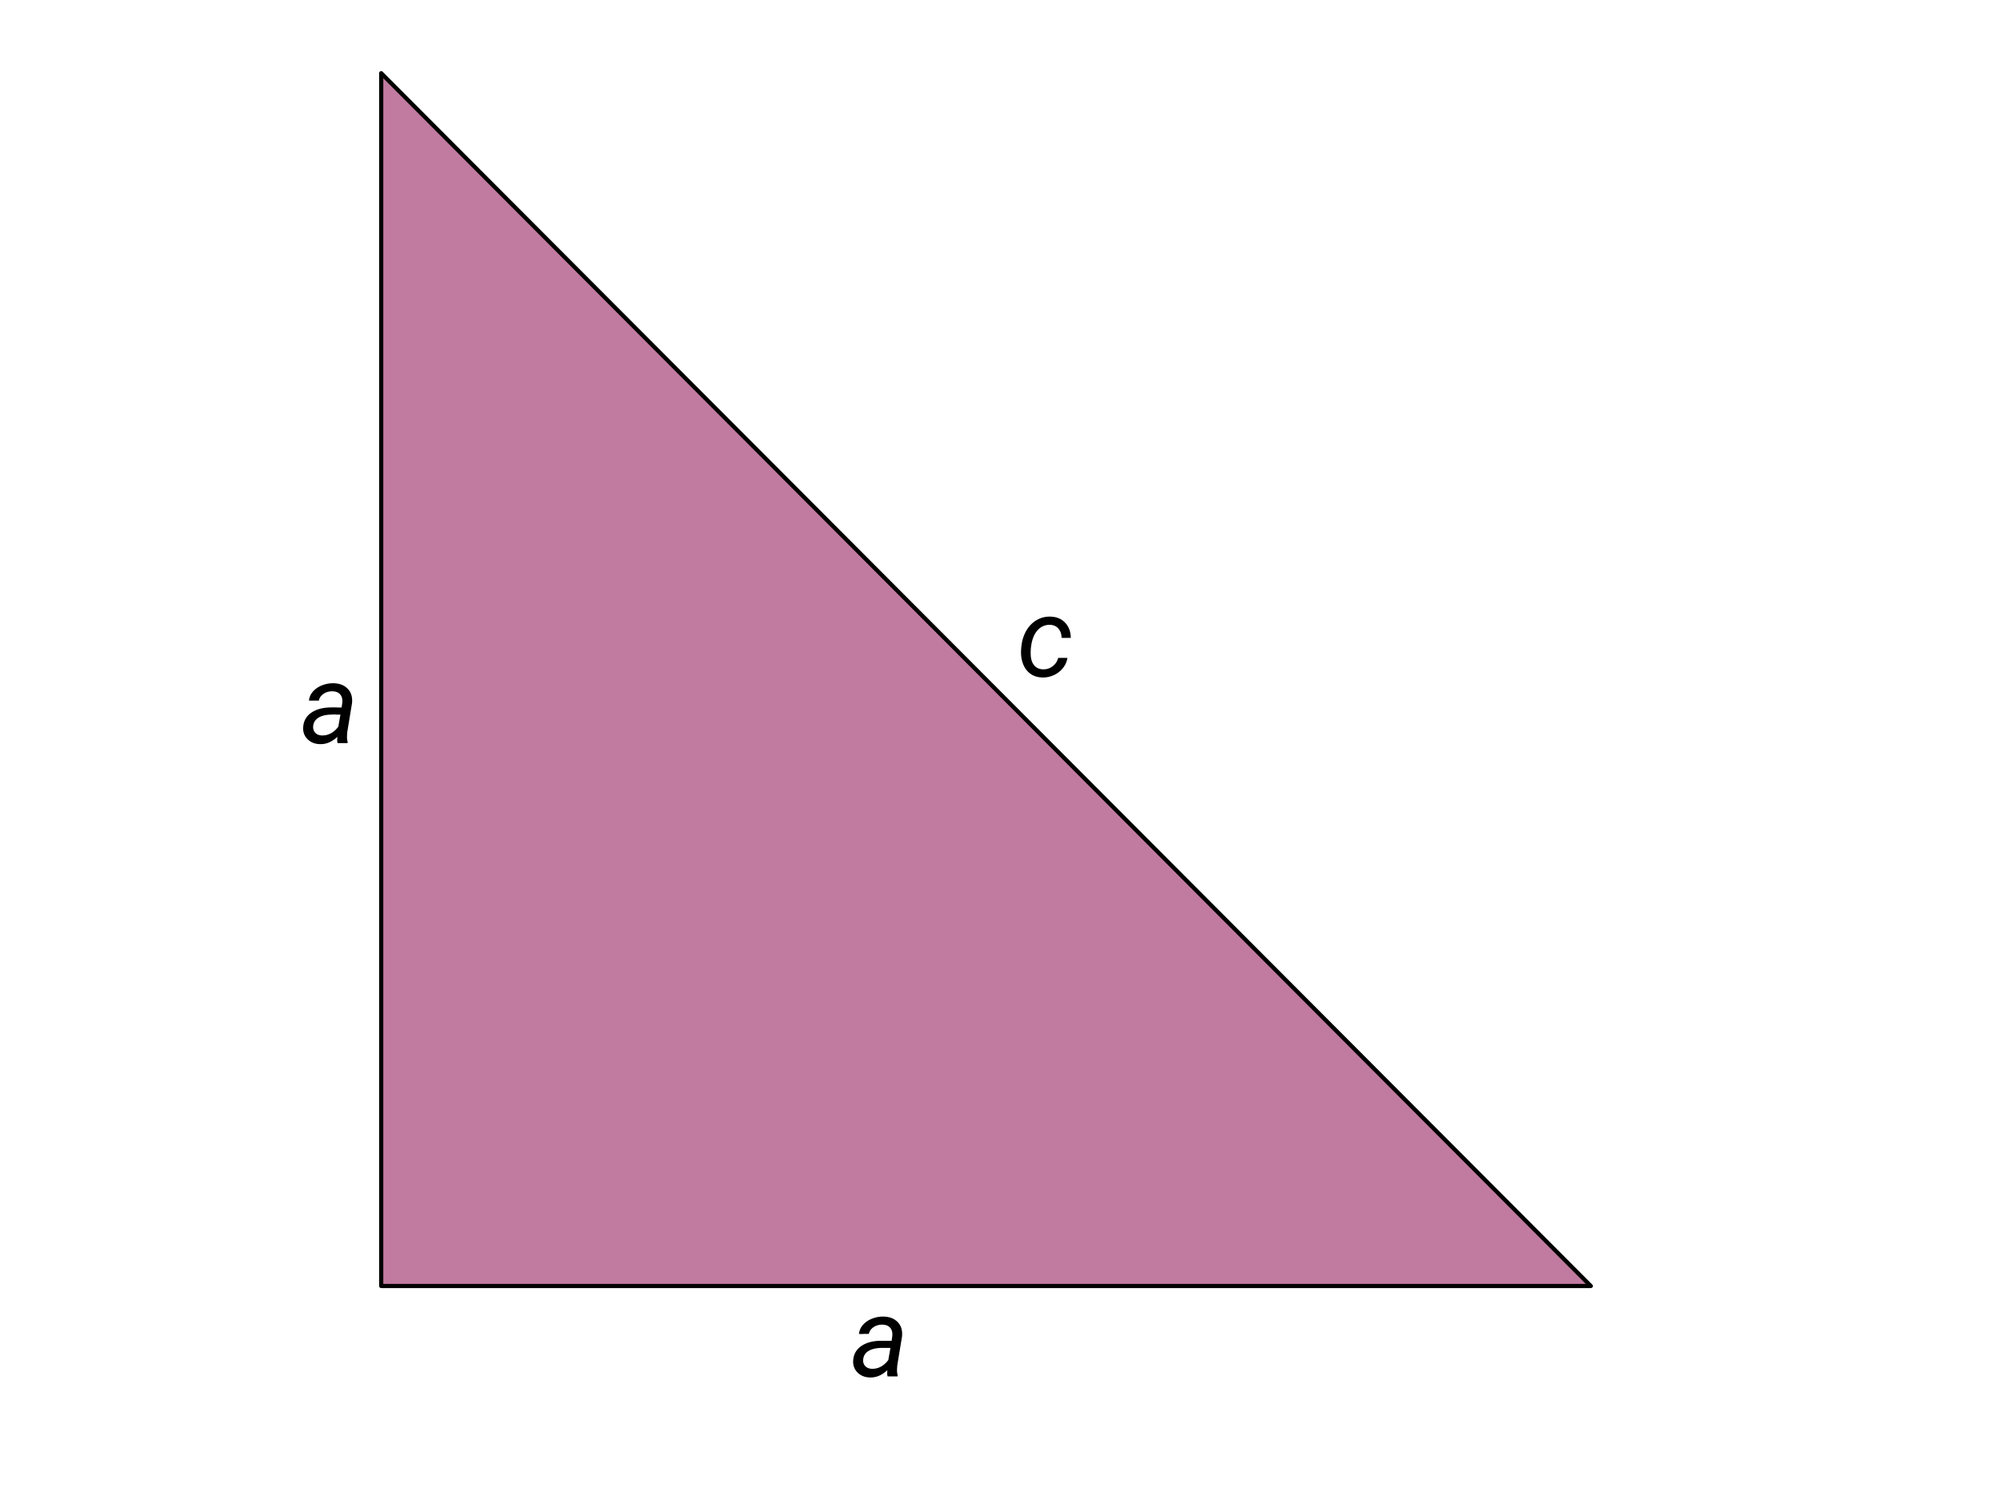 Abbildung eines rechtwinkligen gleichschenkligen Dreiecks